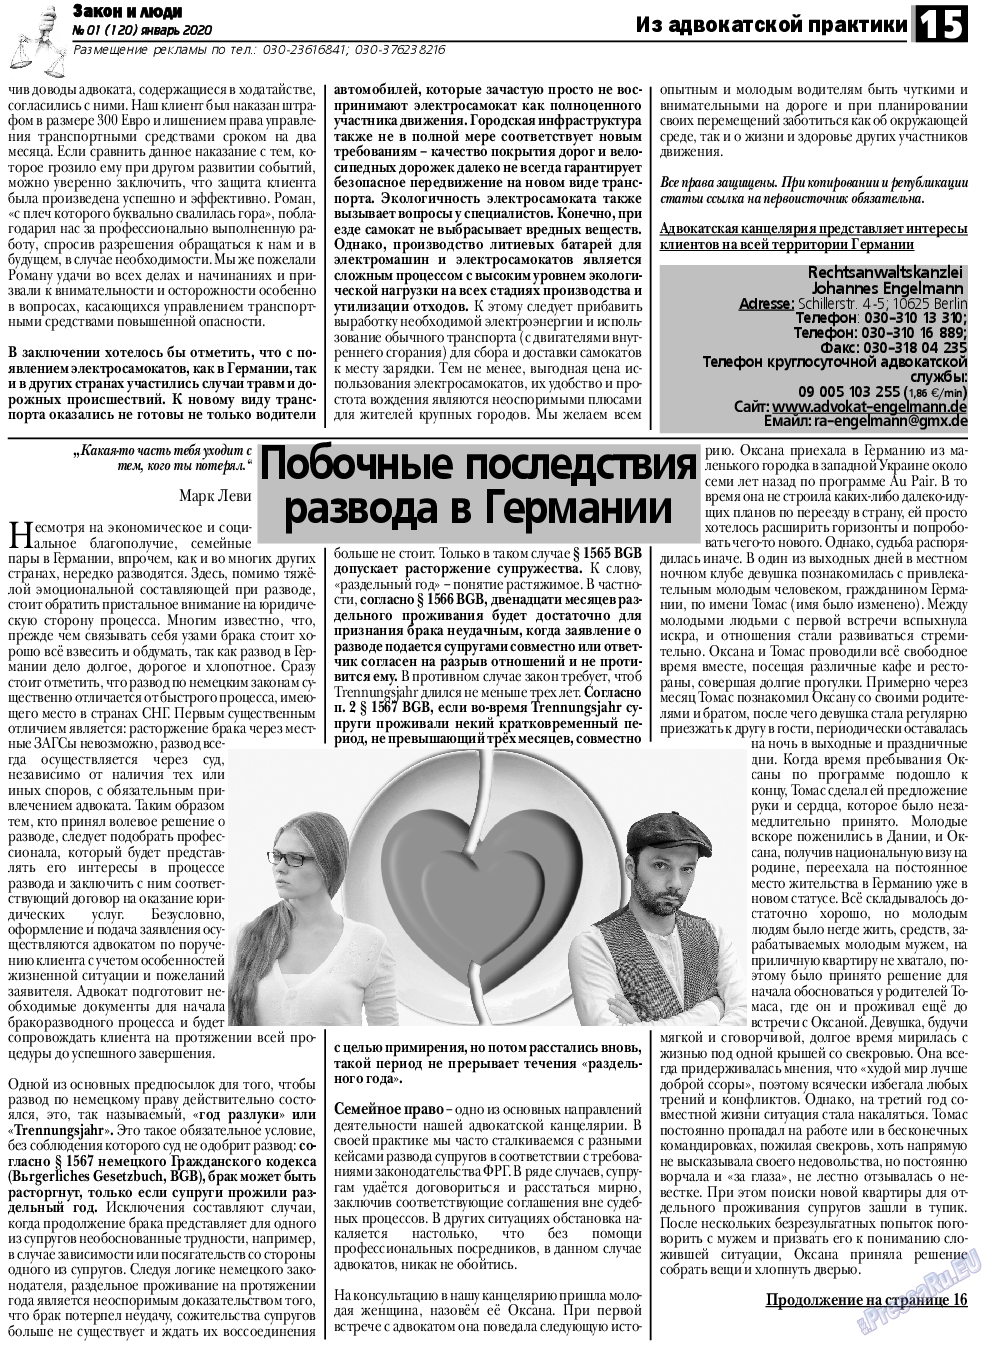 Закон и люди, газета. 2020 №1 стр.15